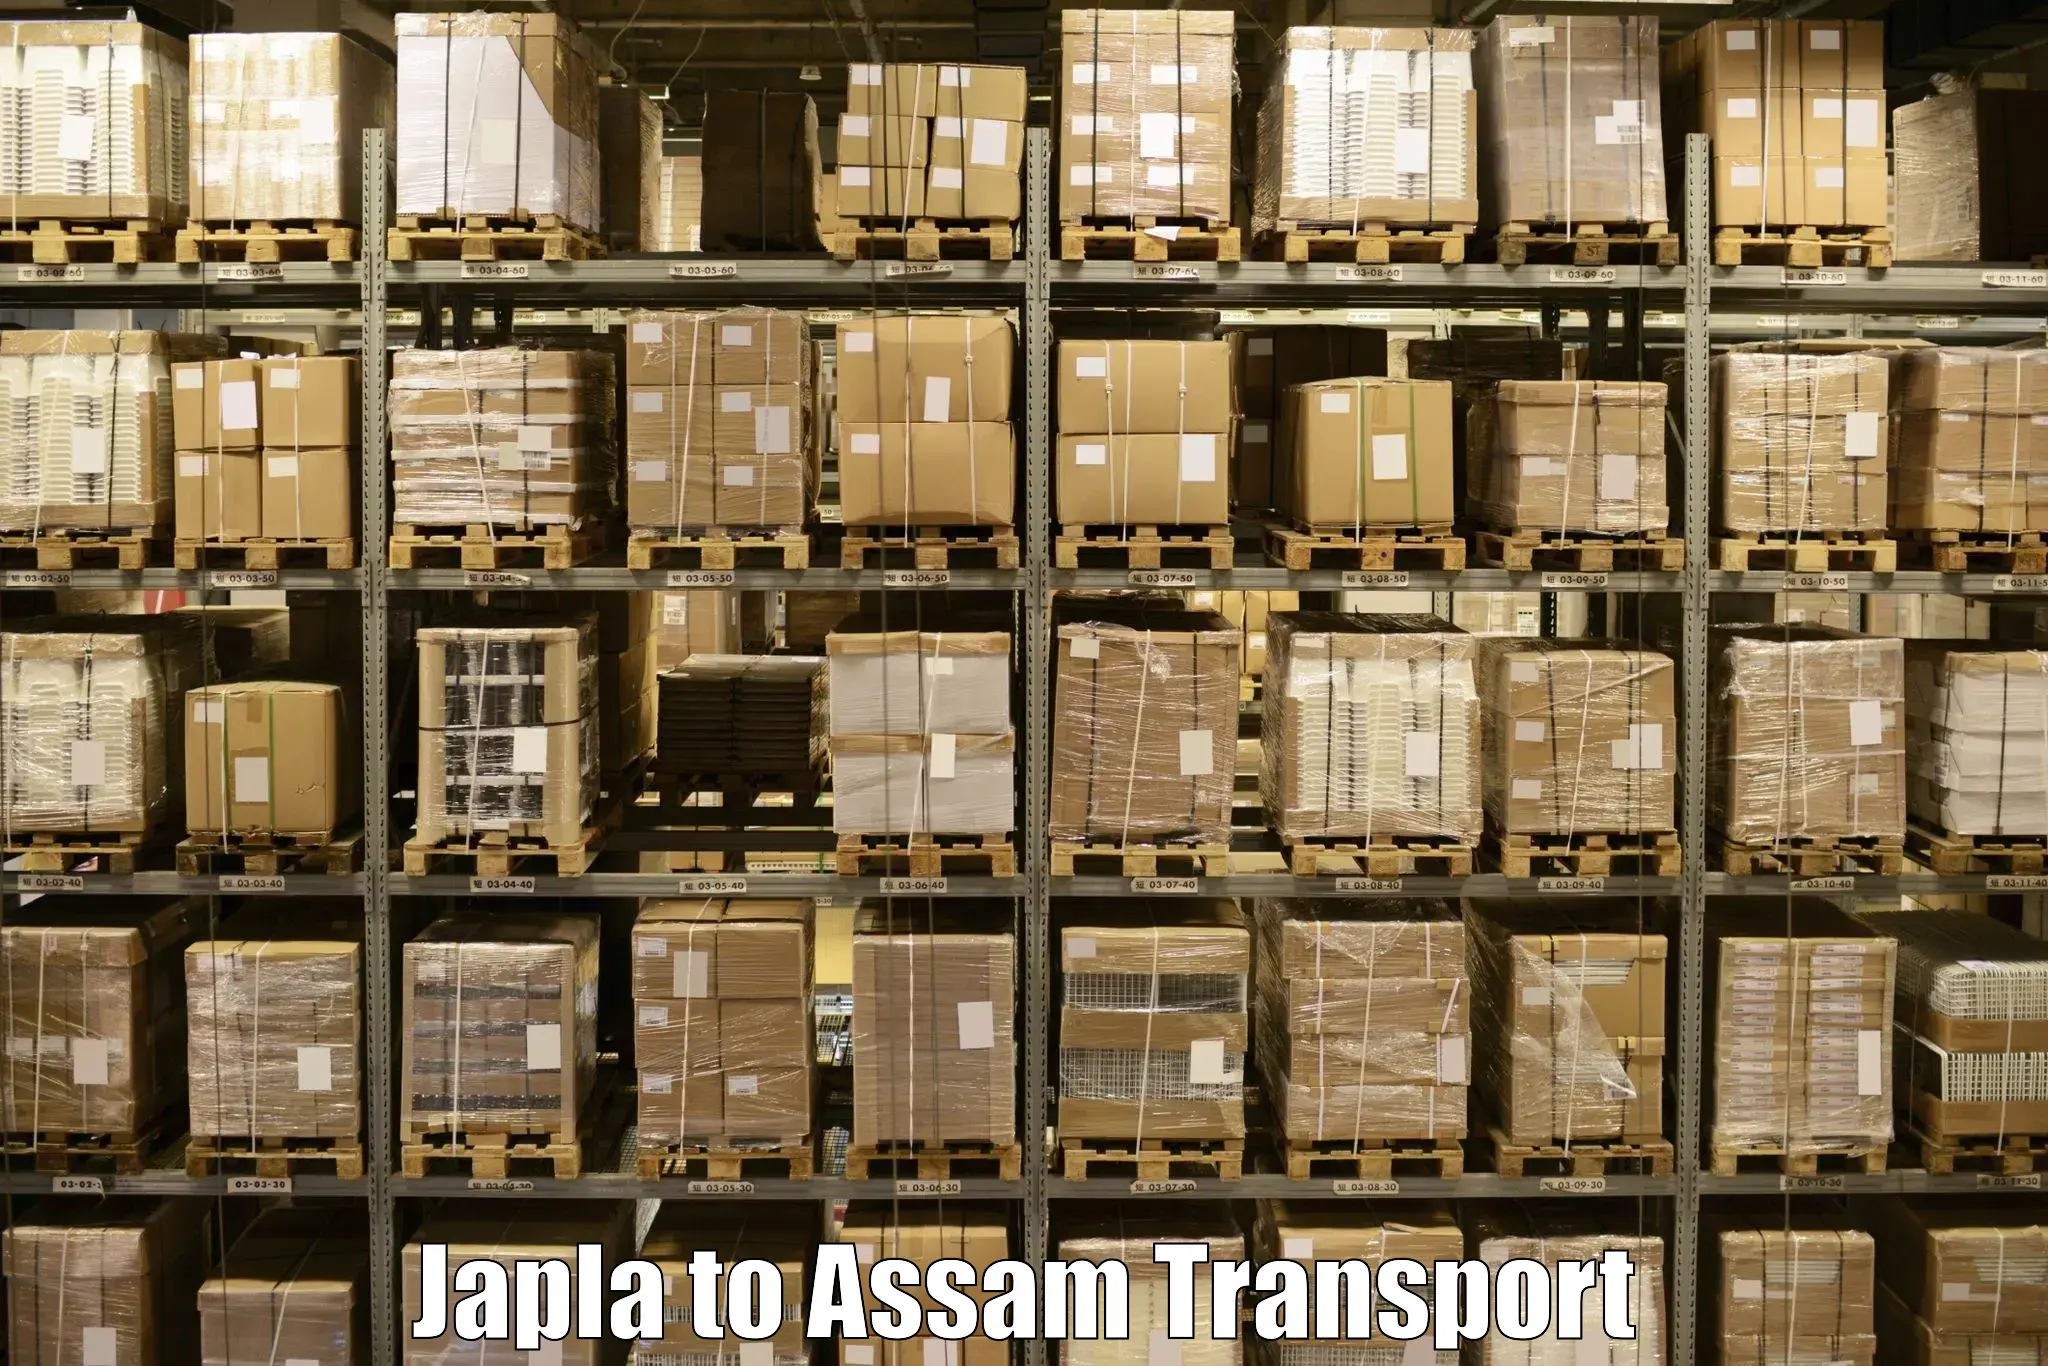 Daily parcel service transport Japla to Darranga Mela